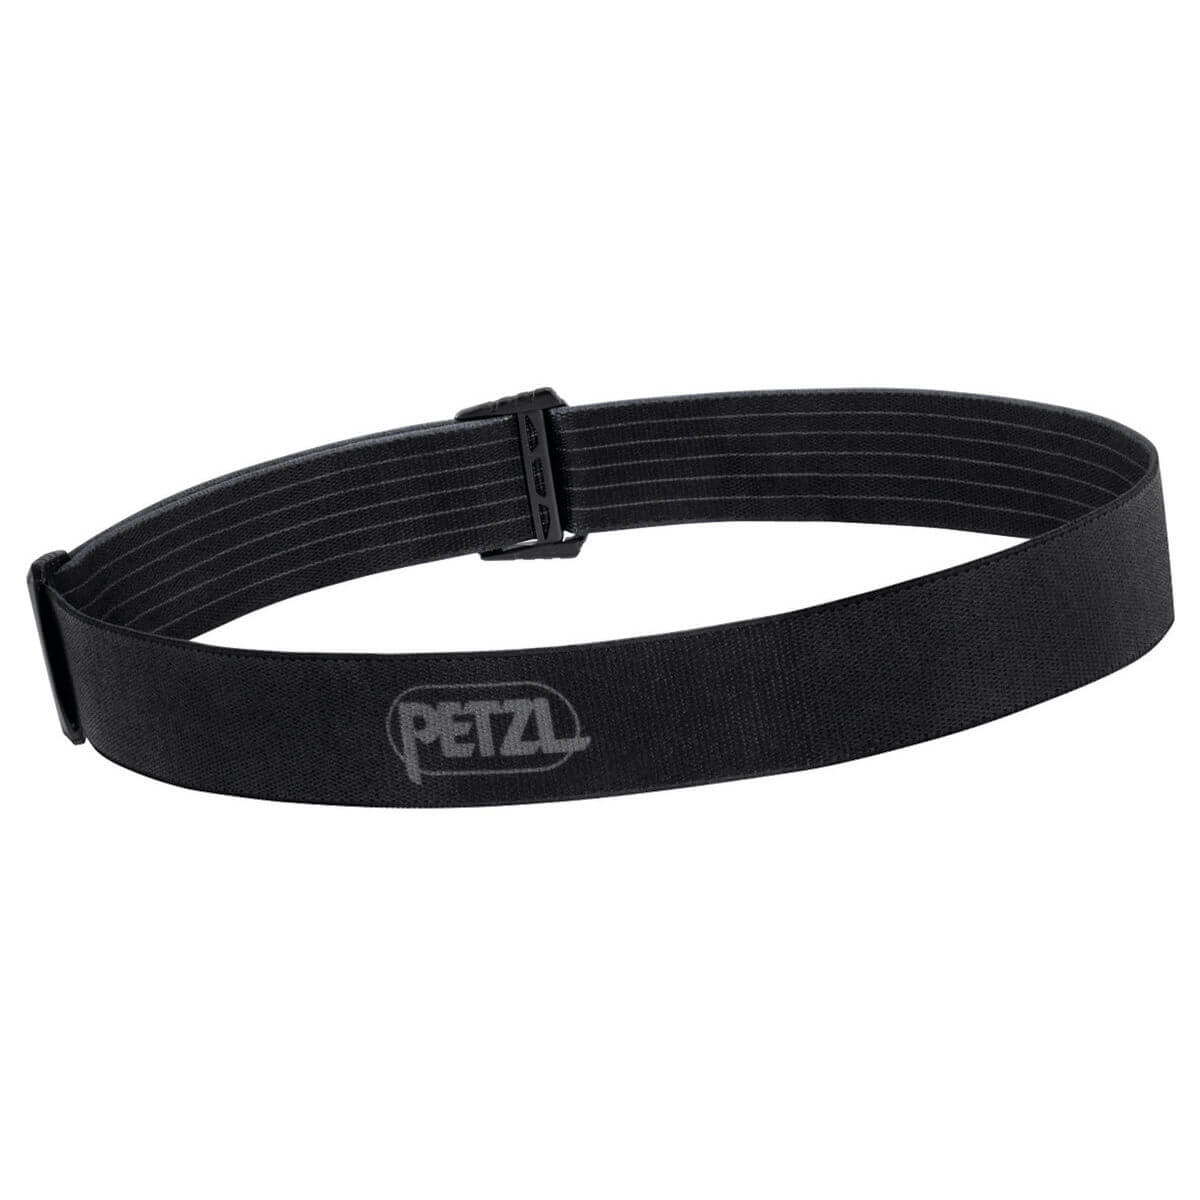 Petzl Ersatz Stirnband schwarz für ARIA Zubehoer Taschenlampe